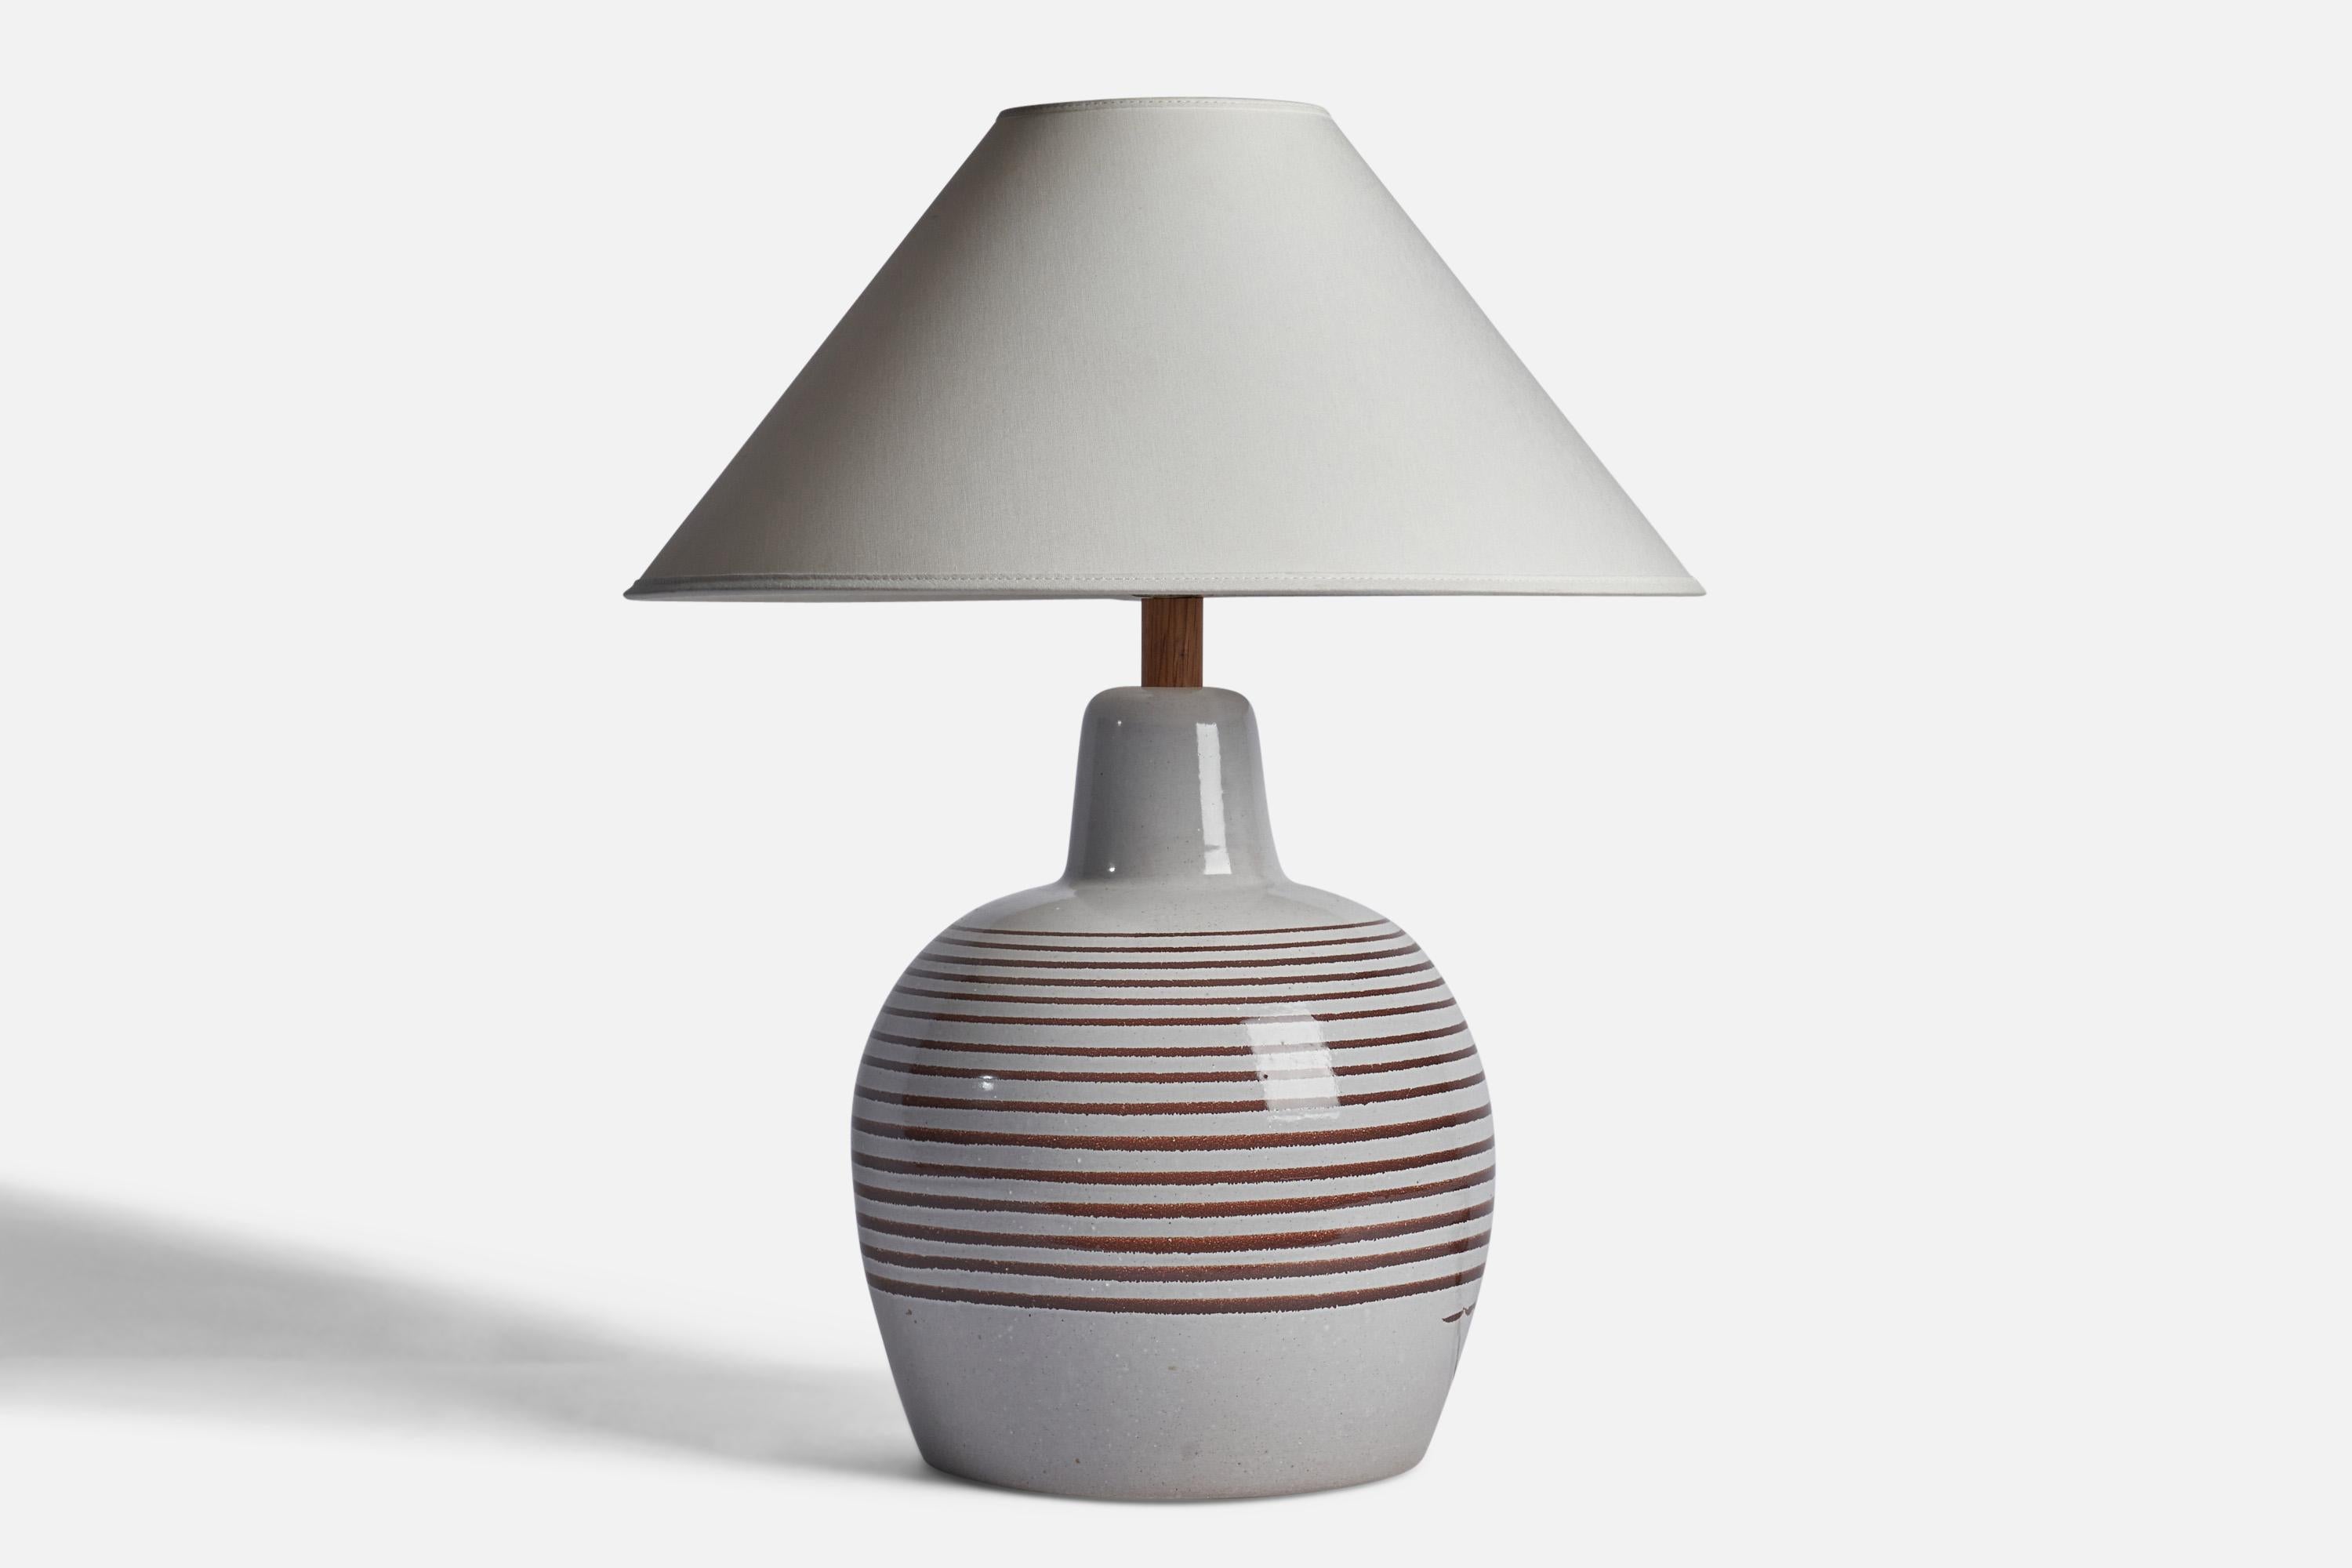 Lampe de table en céramique émaillée gris clair et brun et en noyer, conçue par Jane & Gordon Martz et produite par Marshall Studios, États-Unis, années 1960.

Dimensions de la lampe (pouces) : 16